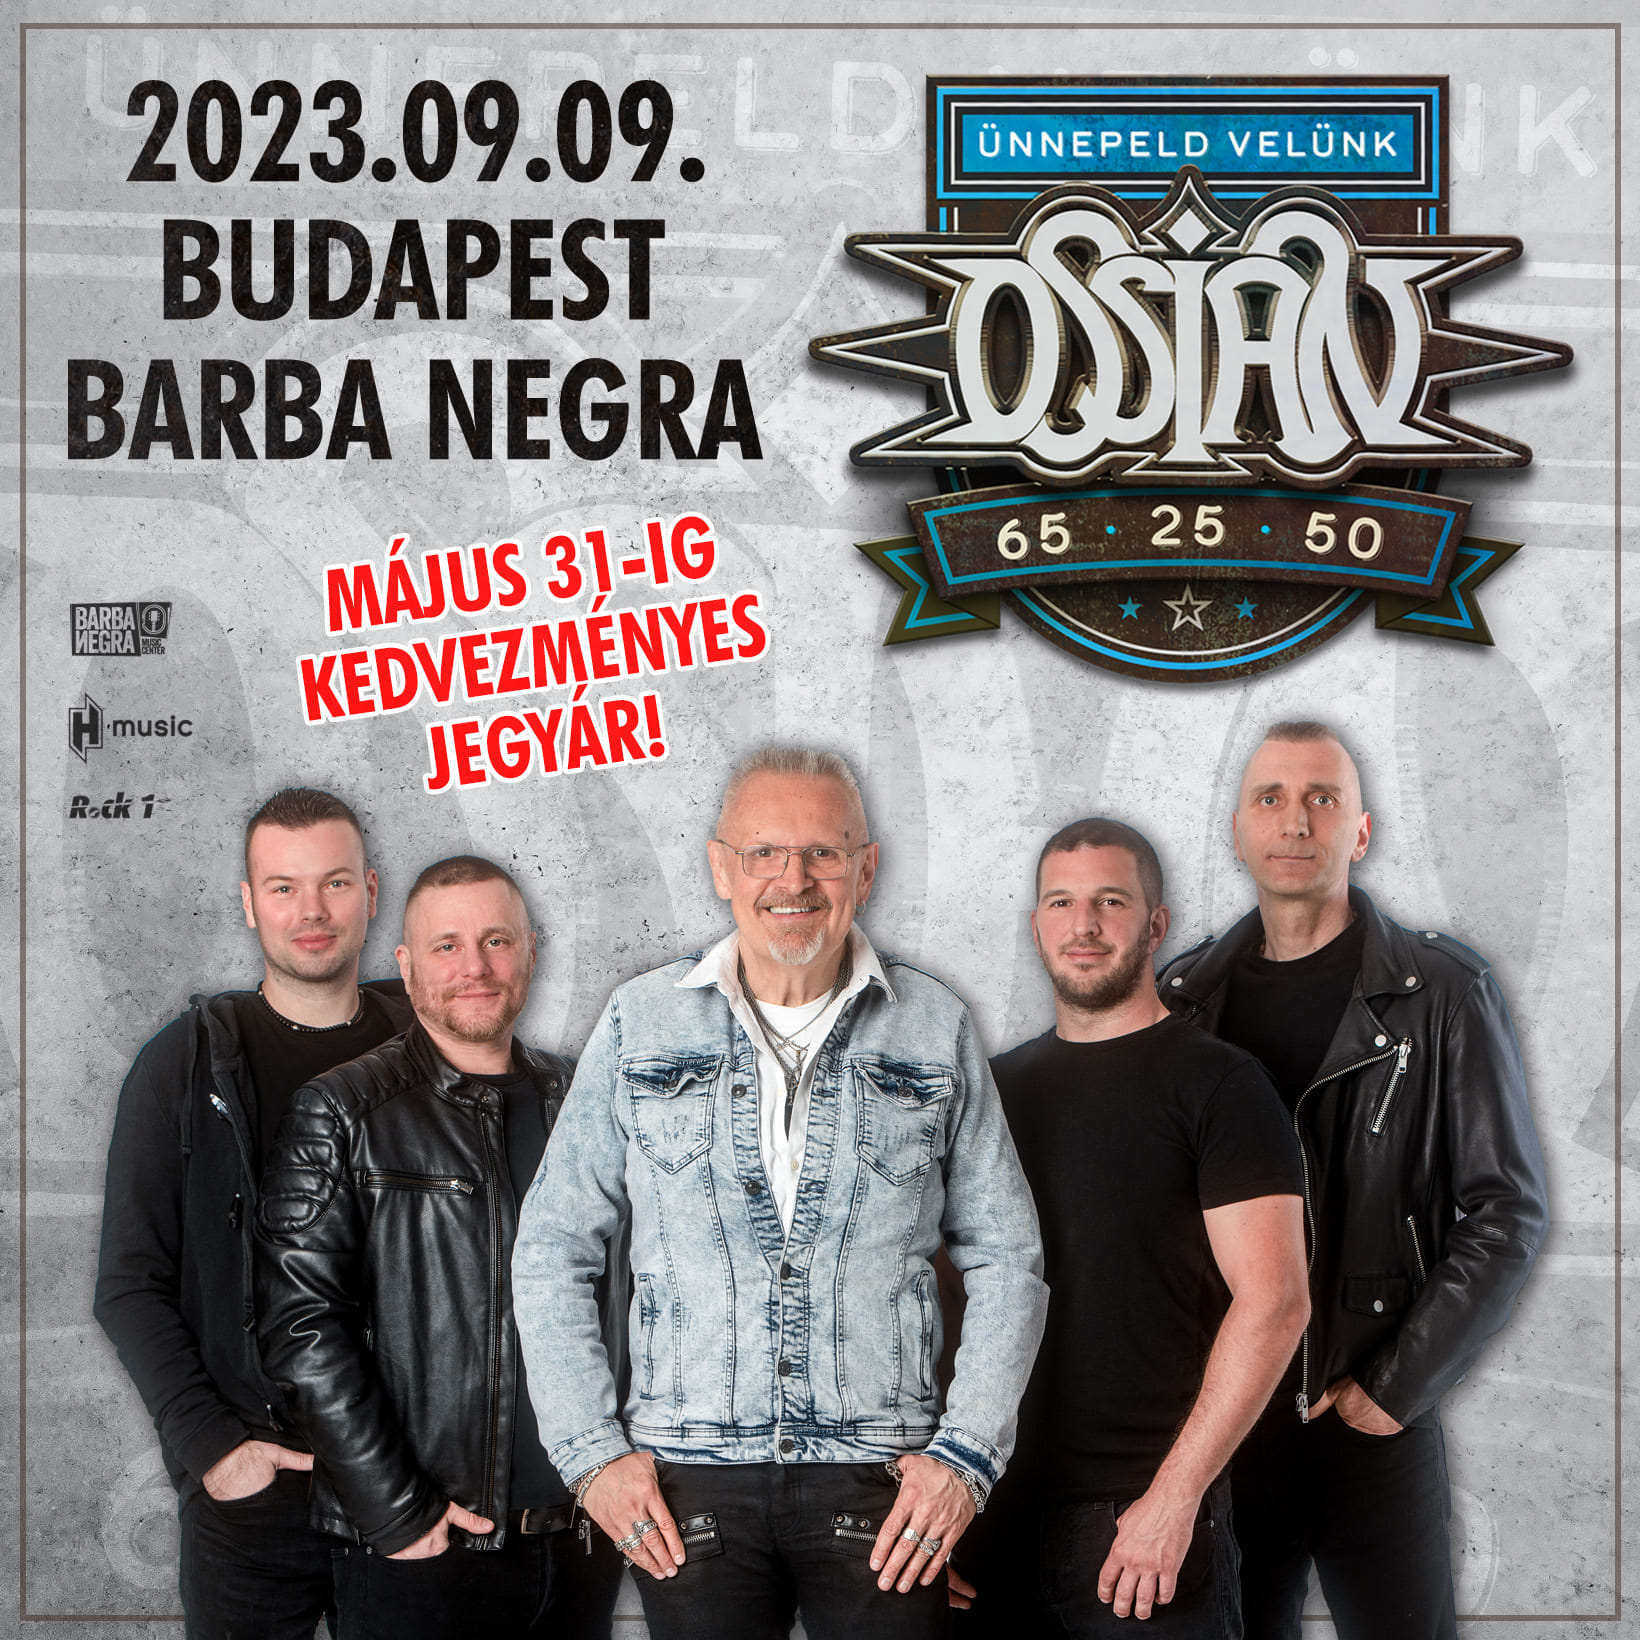 Ossian - 65-25-50 tripla jubileumi koncert 2023. szeptember 9-én Budapesten a Barba Negrában!